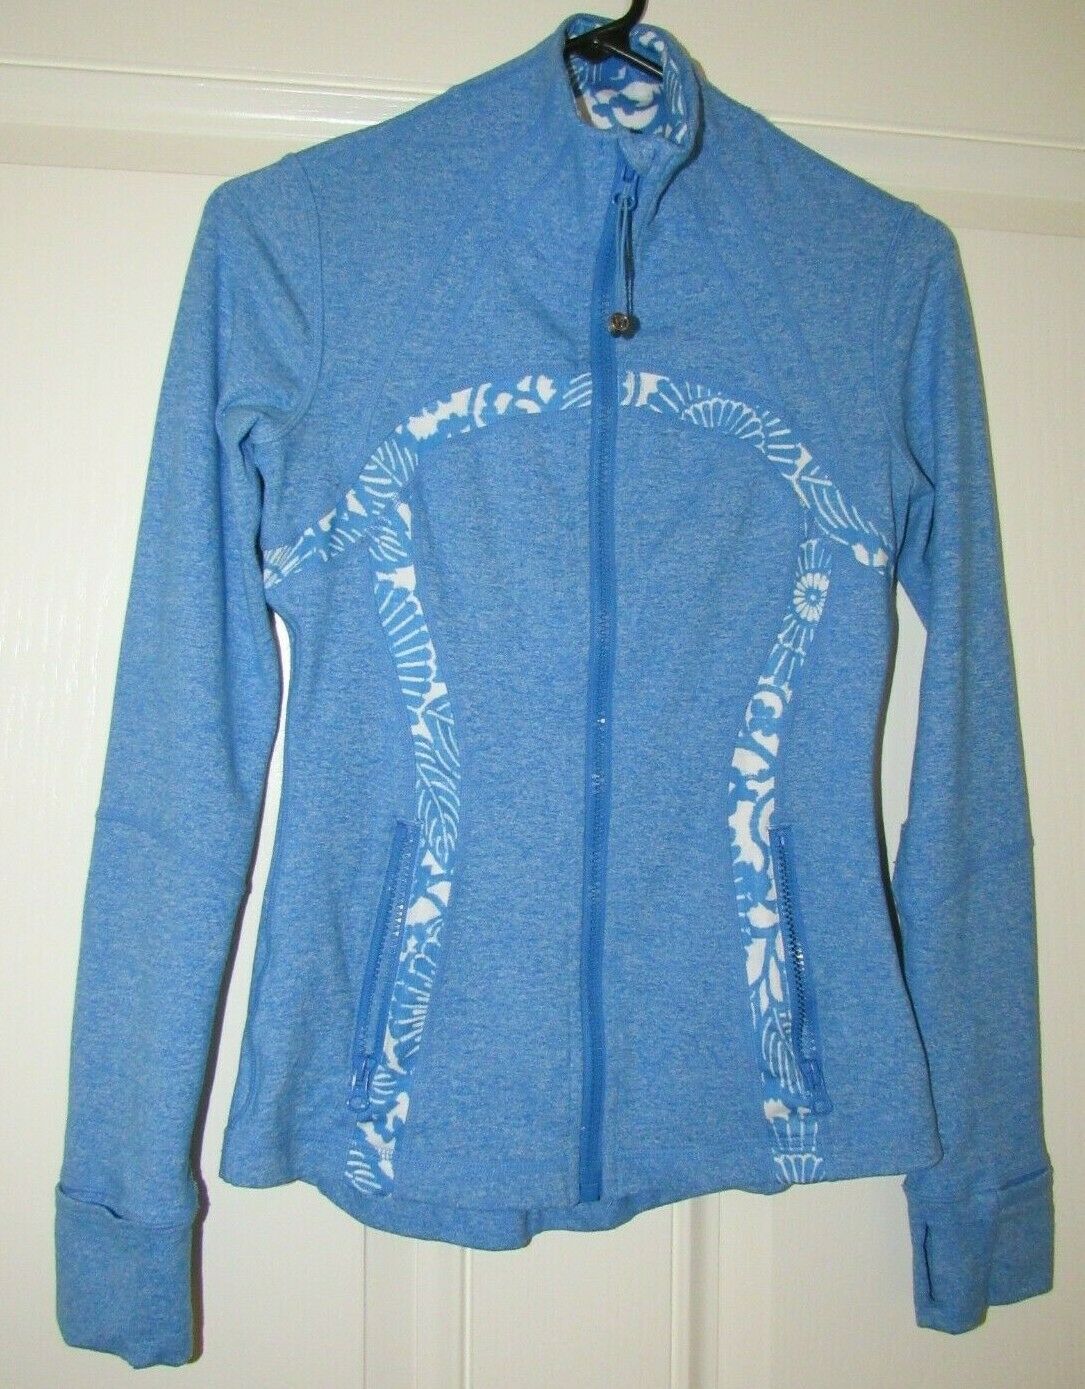 Lululemon Define Athletic Jacket Full Zip Heathered Blue Women's Size 4 $118